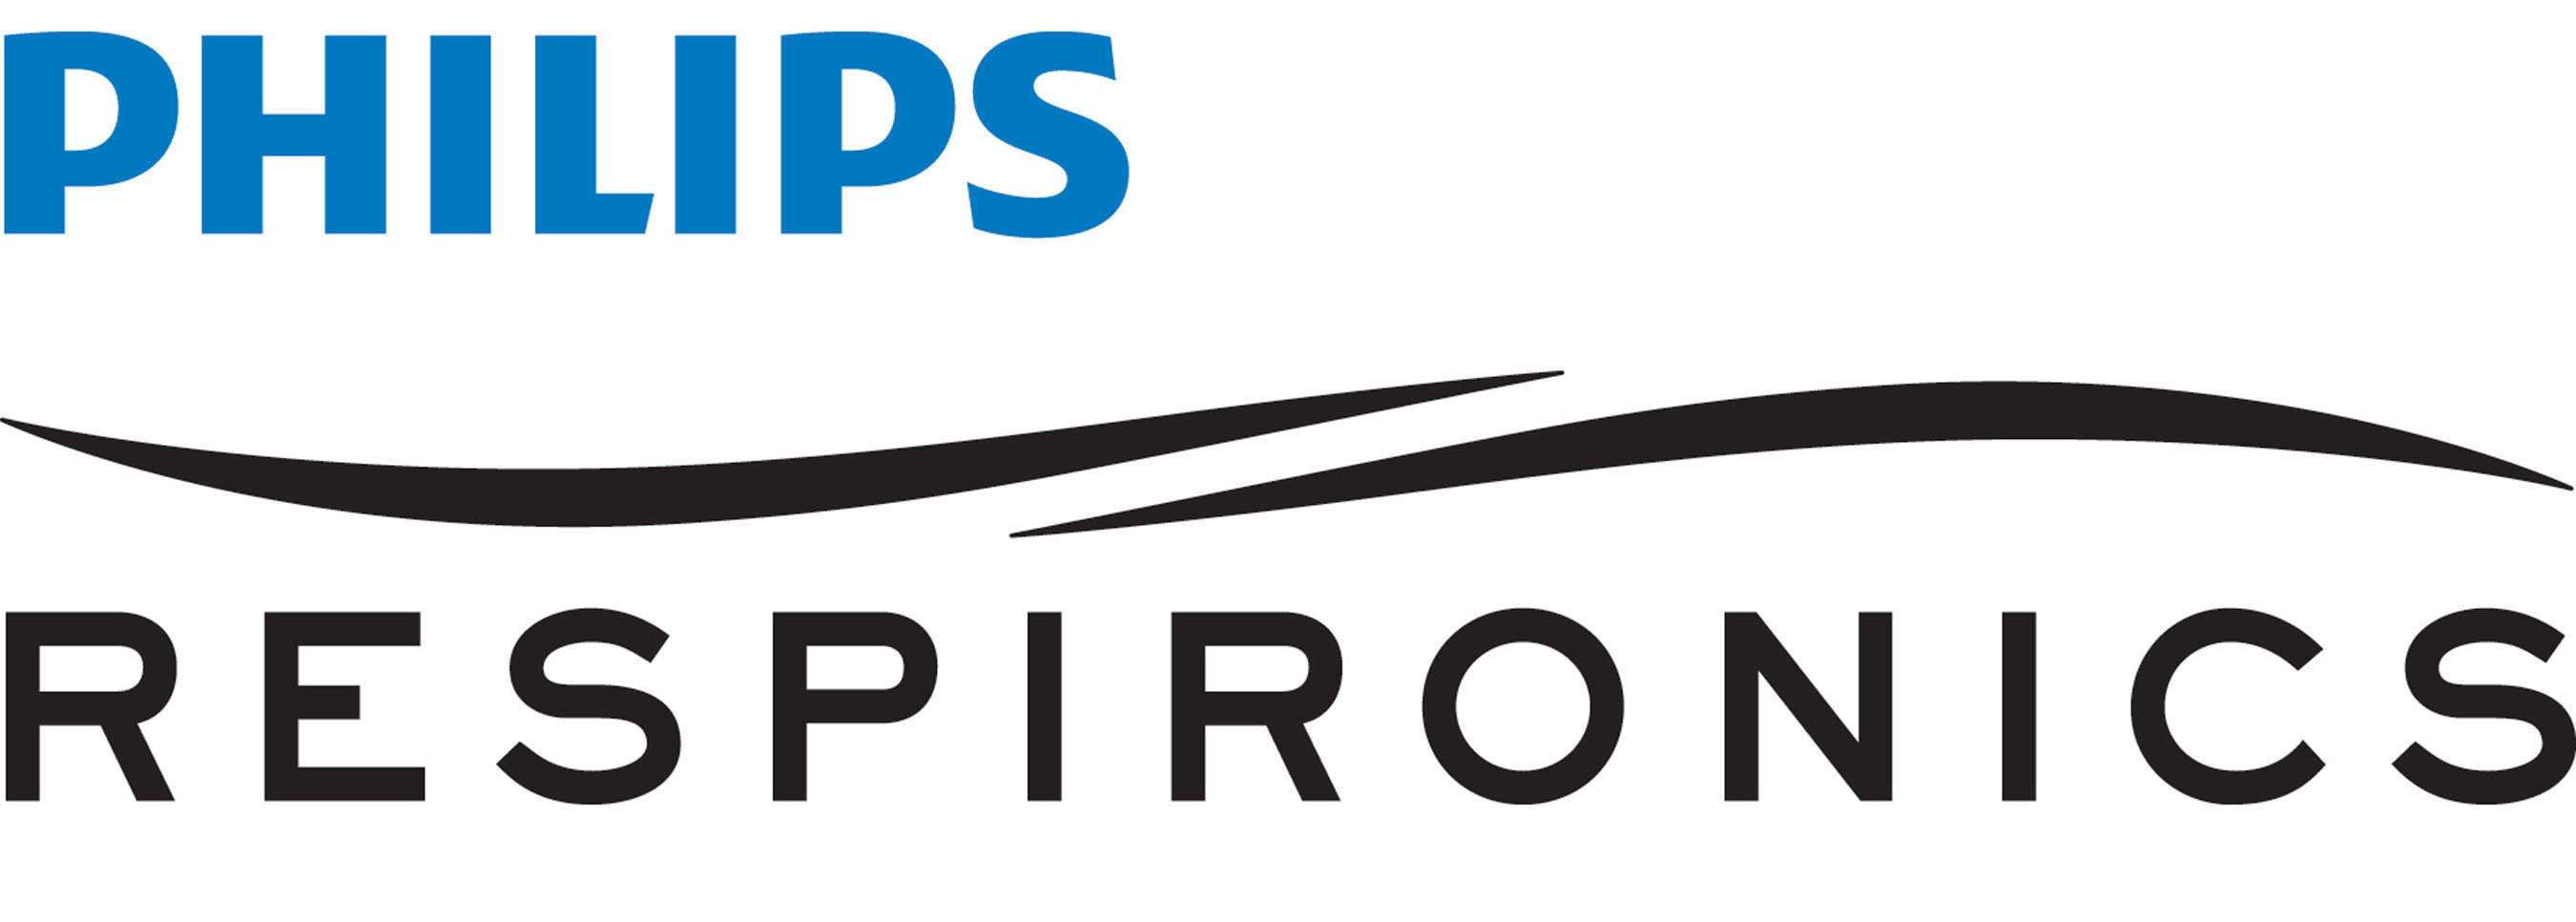 Philips GmbH Respironics